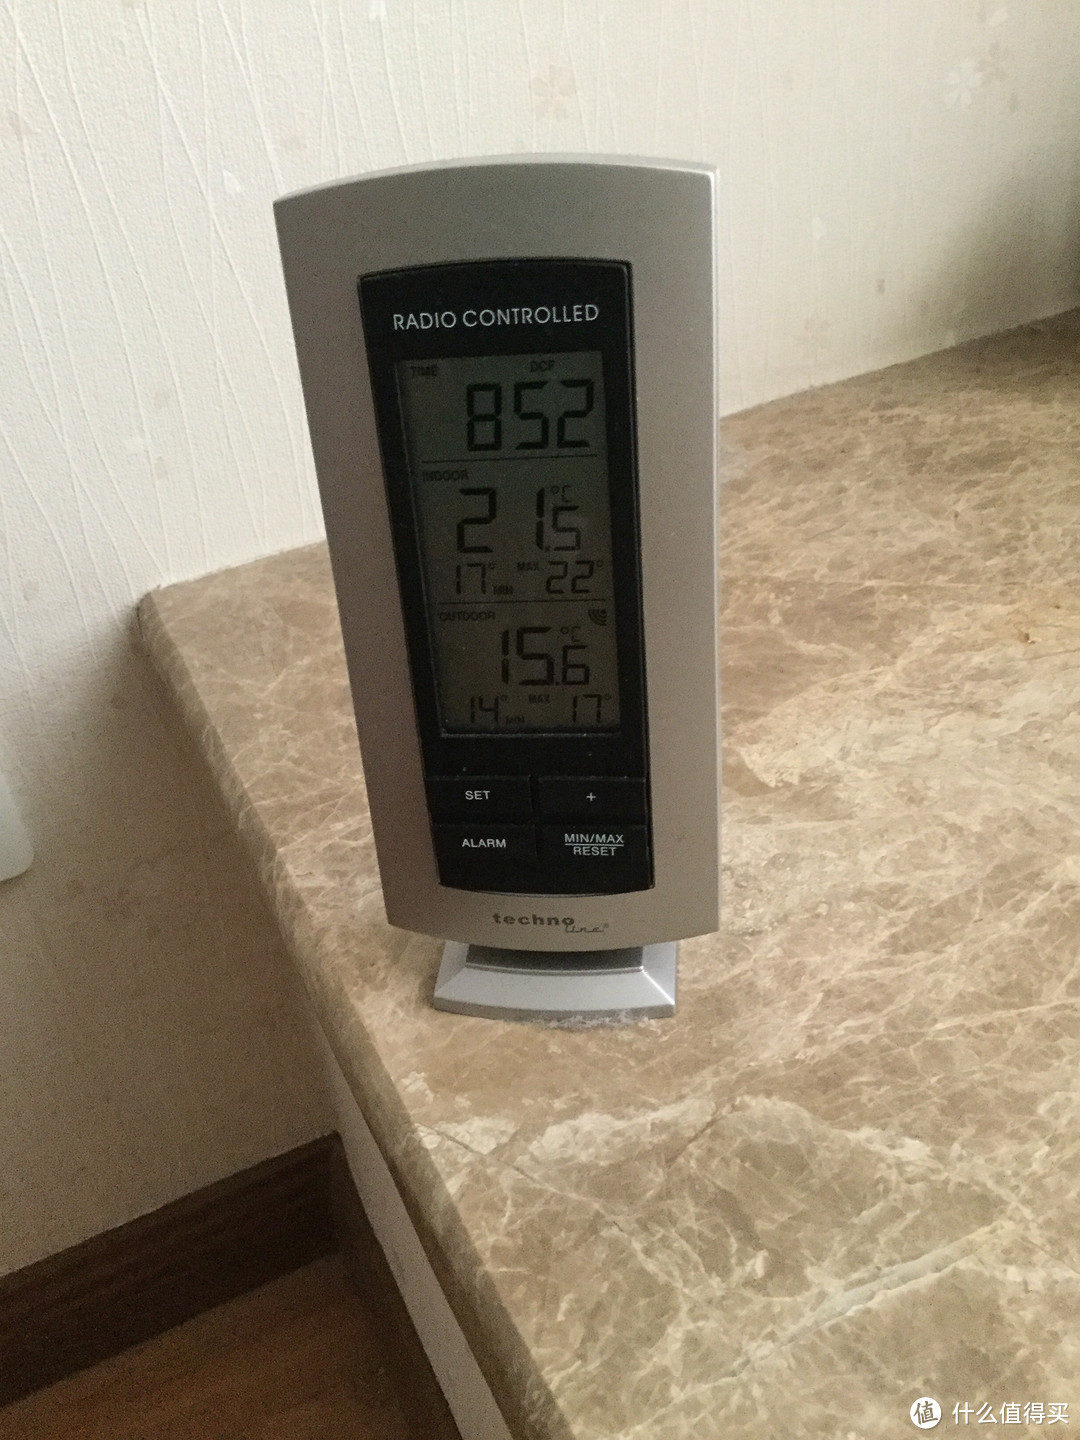 为什么我不装空调？NOIROT诺朗电暖器使用一年感受及能耗测试